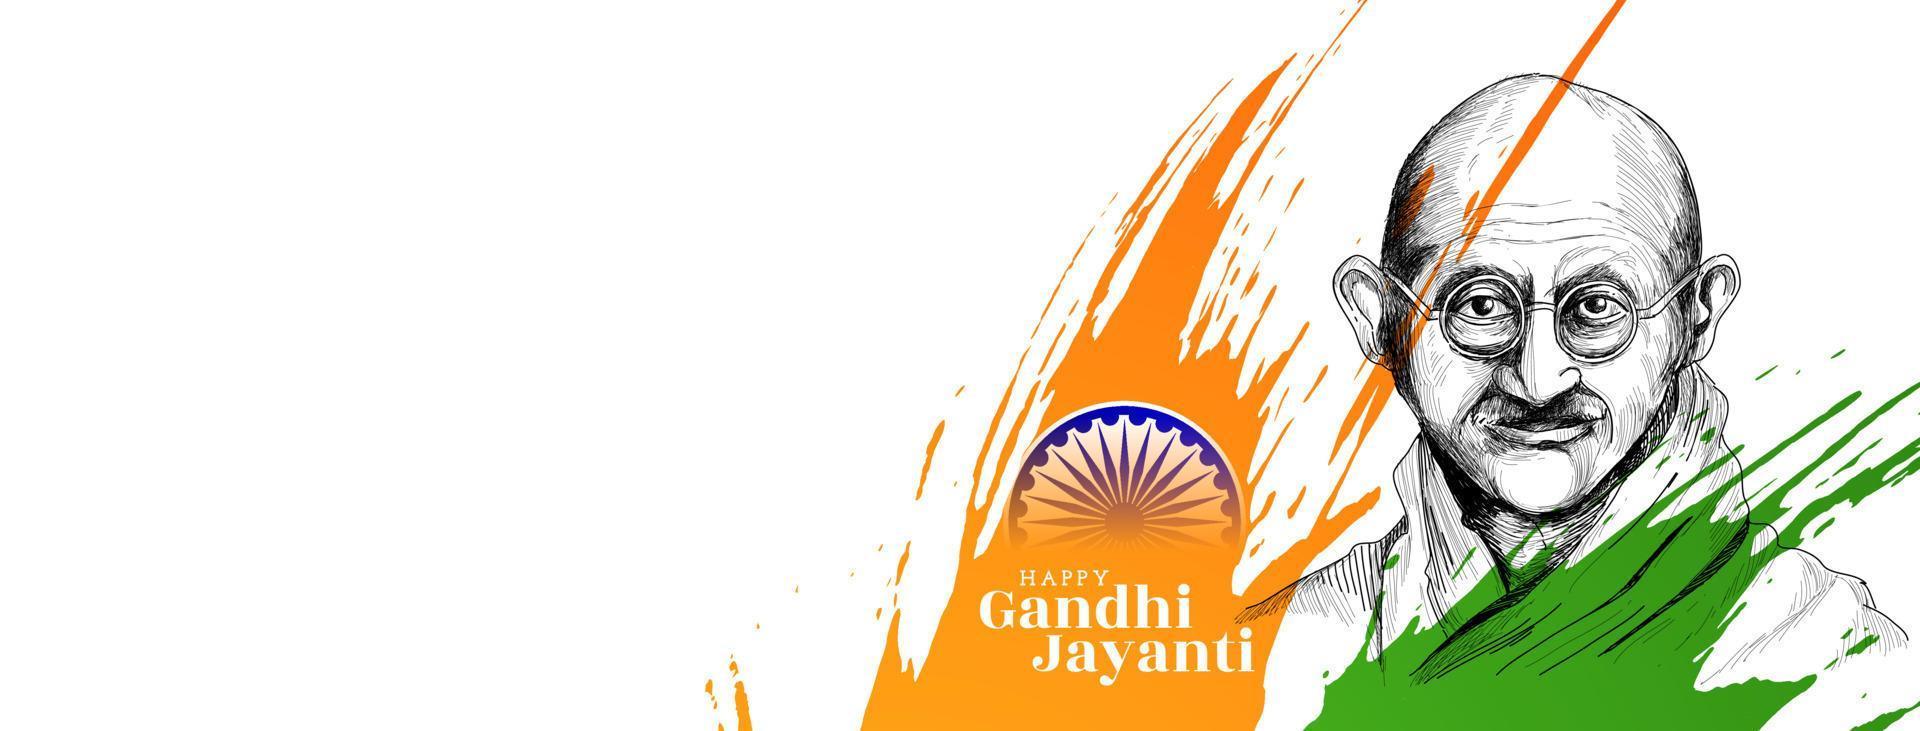 Happy gandhi Jayanti 2nd october celebration banner design vector